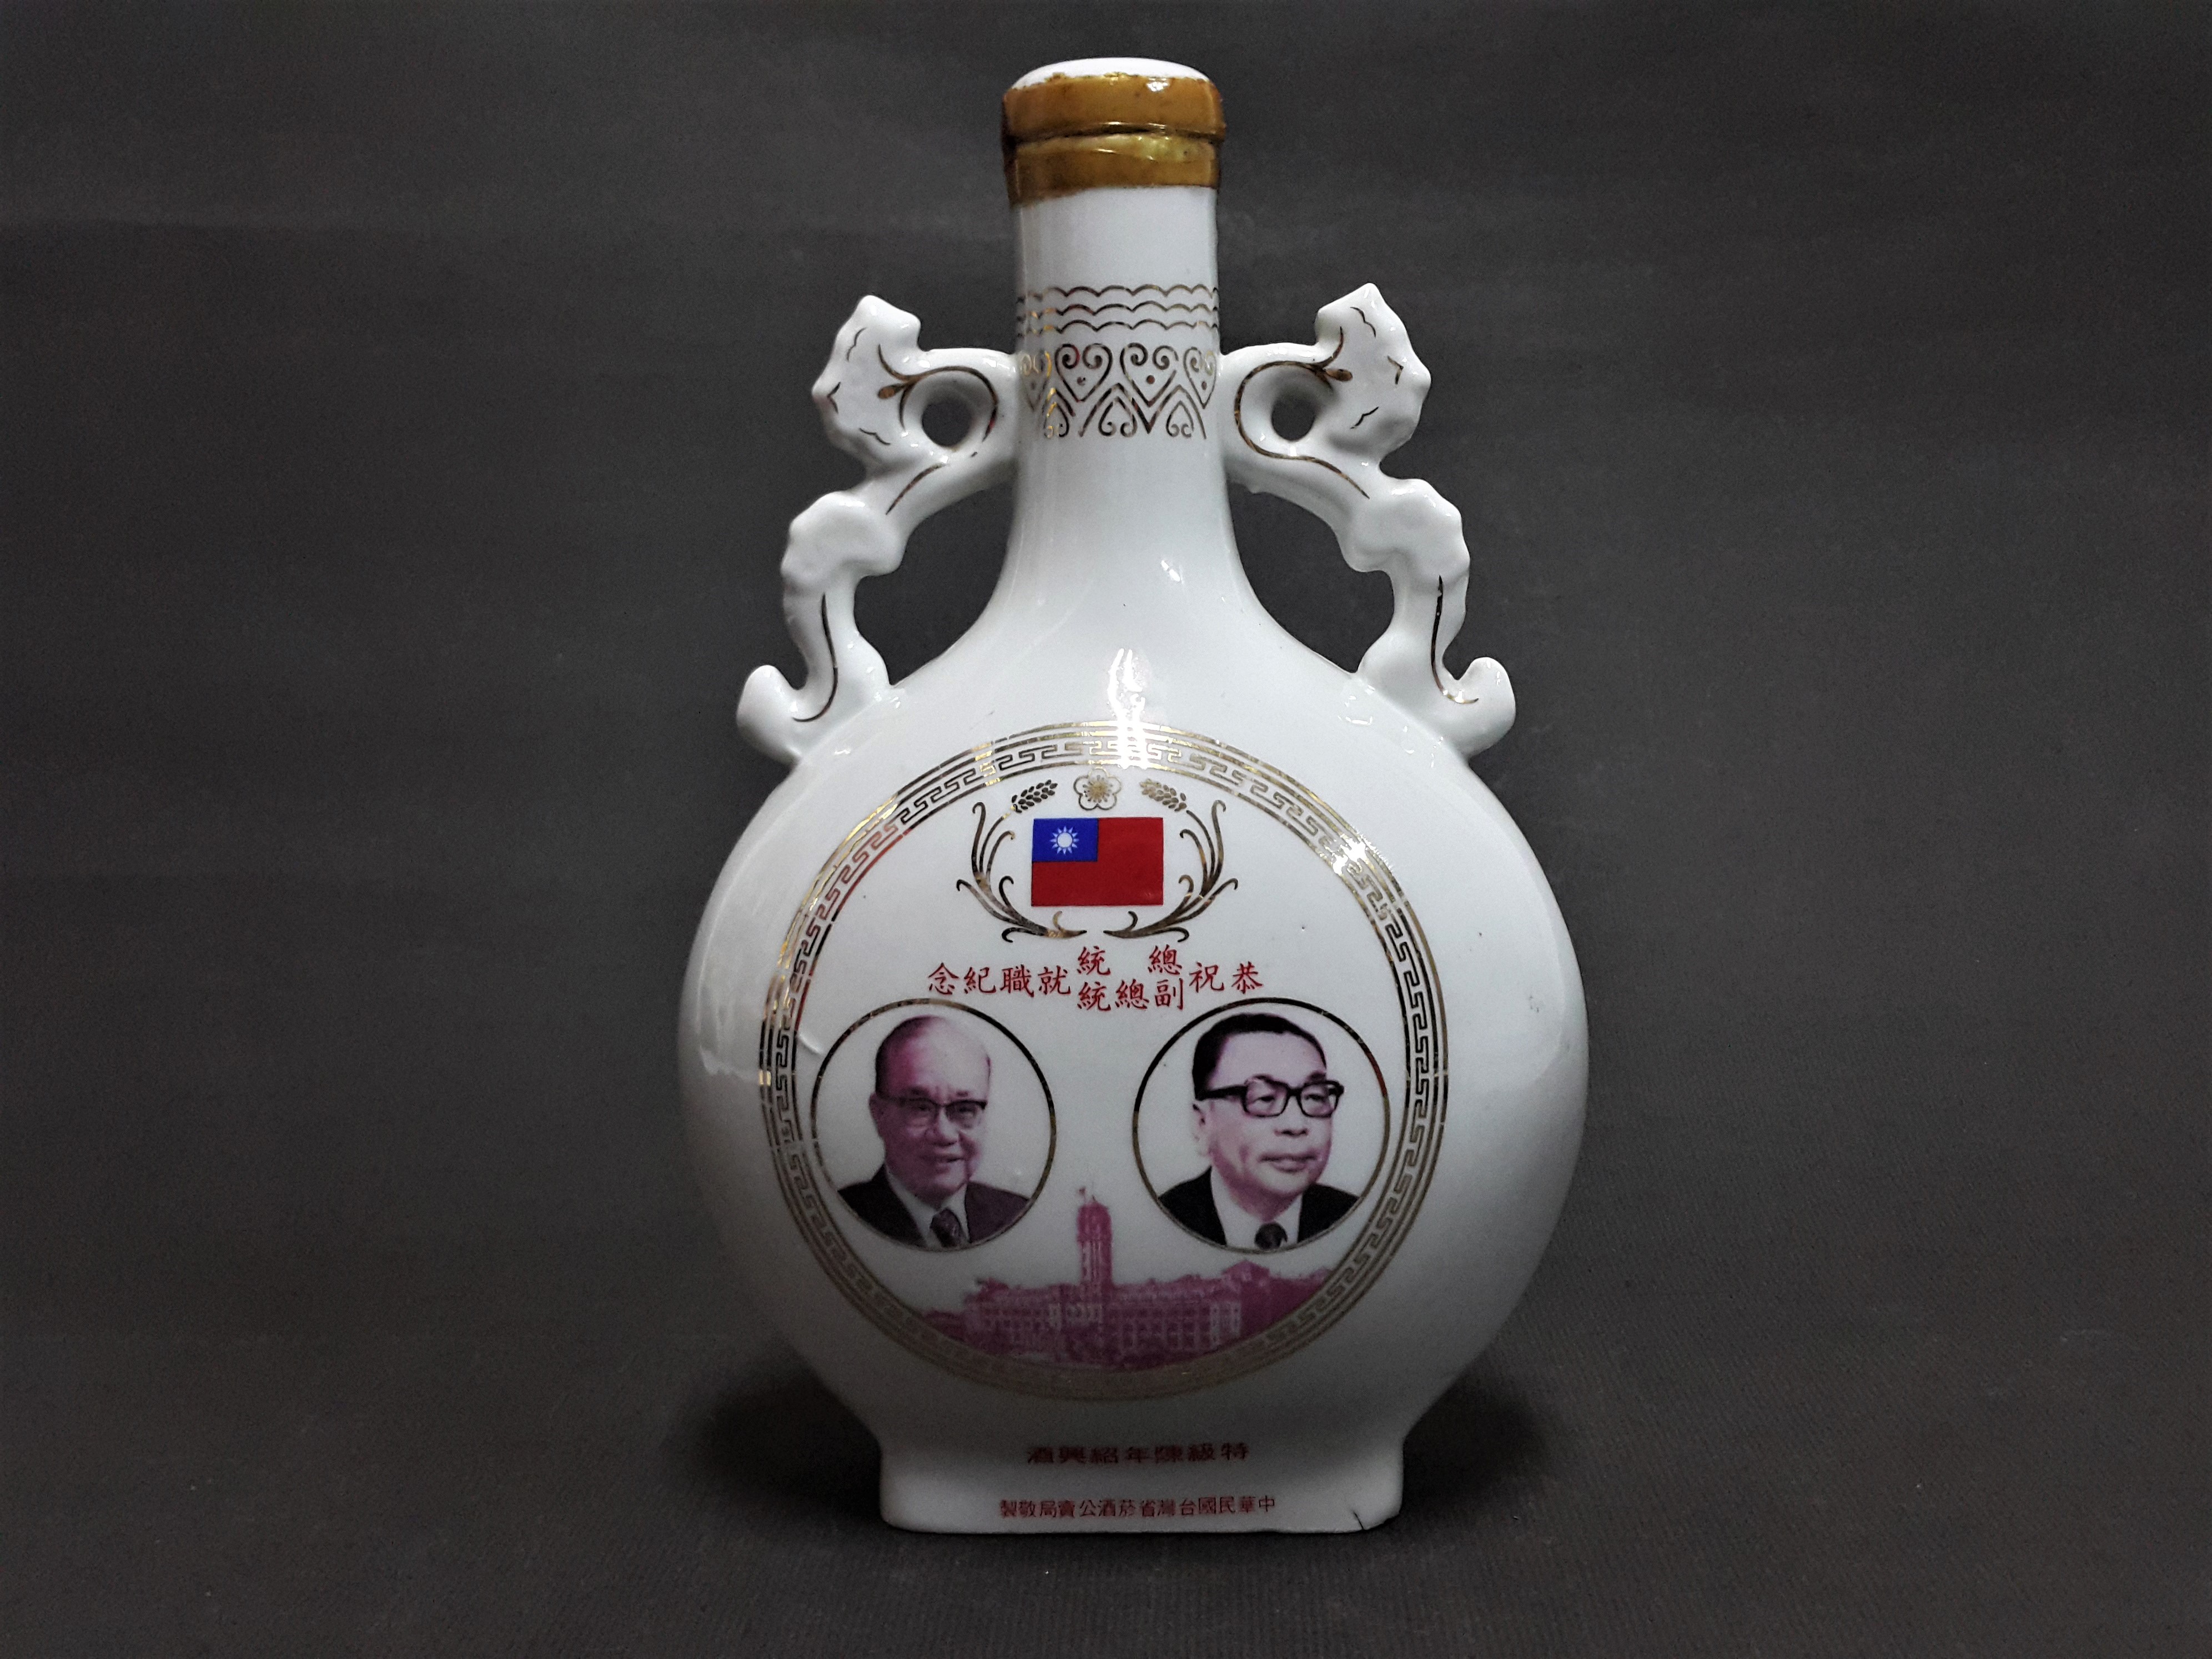 [銀九藝] 台灣菸酒公賣局 民國67年恭祝總統 副總統就職紀念 特級陳年紹興酒瓶 空酒瓶